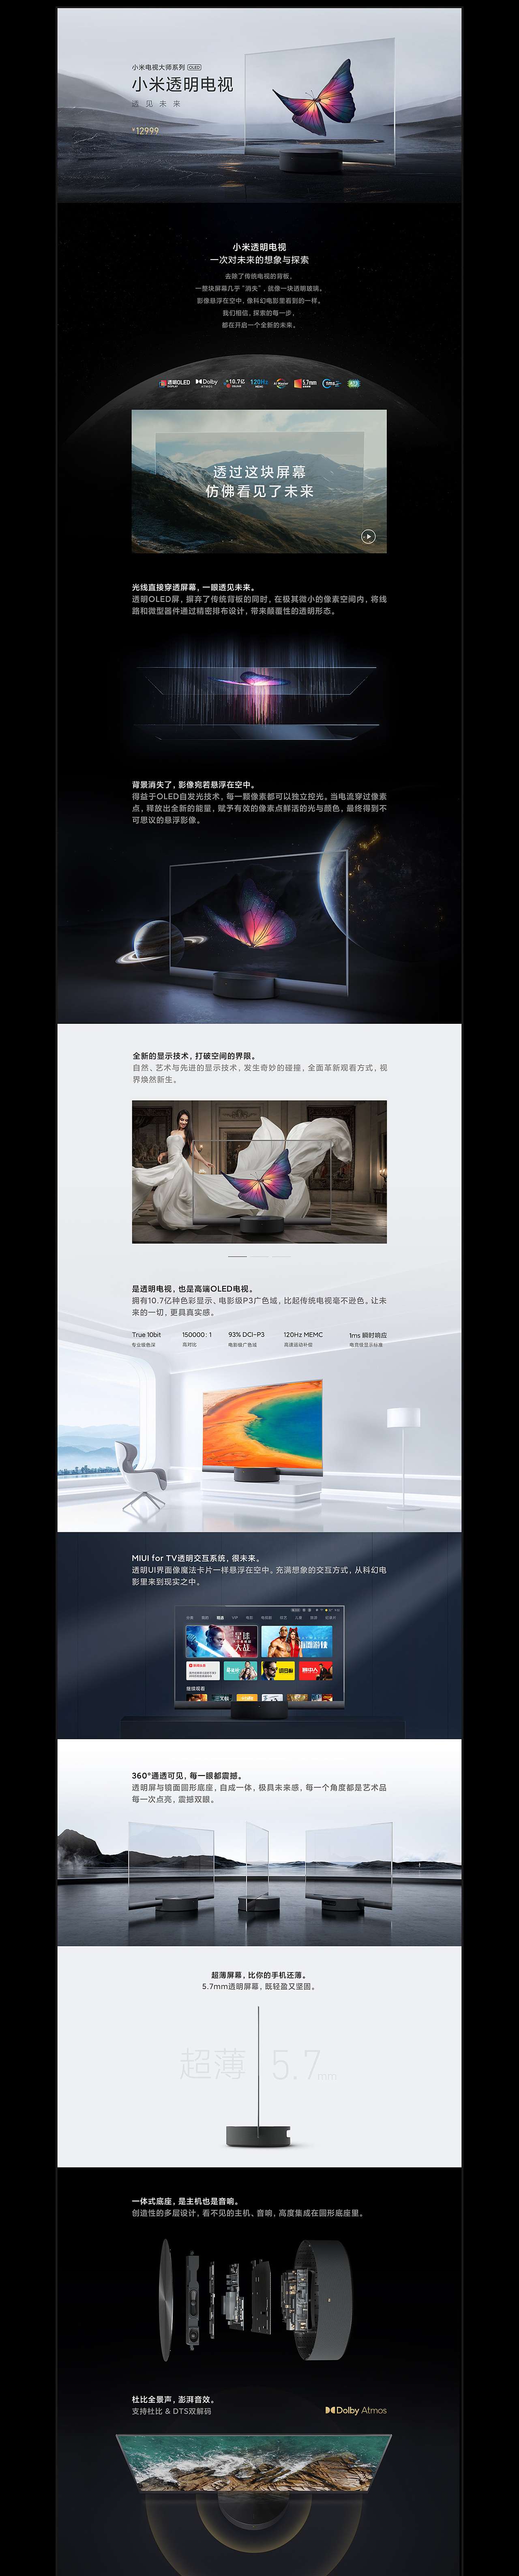 小米透明电视产品站